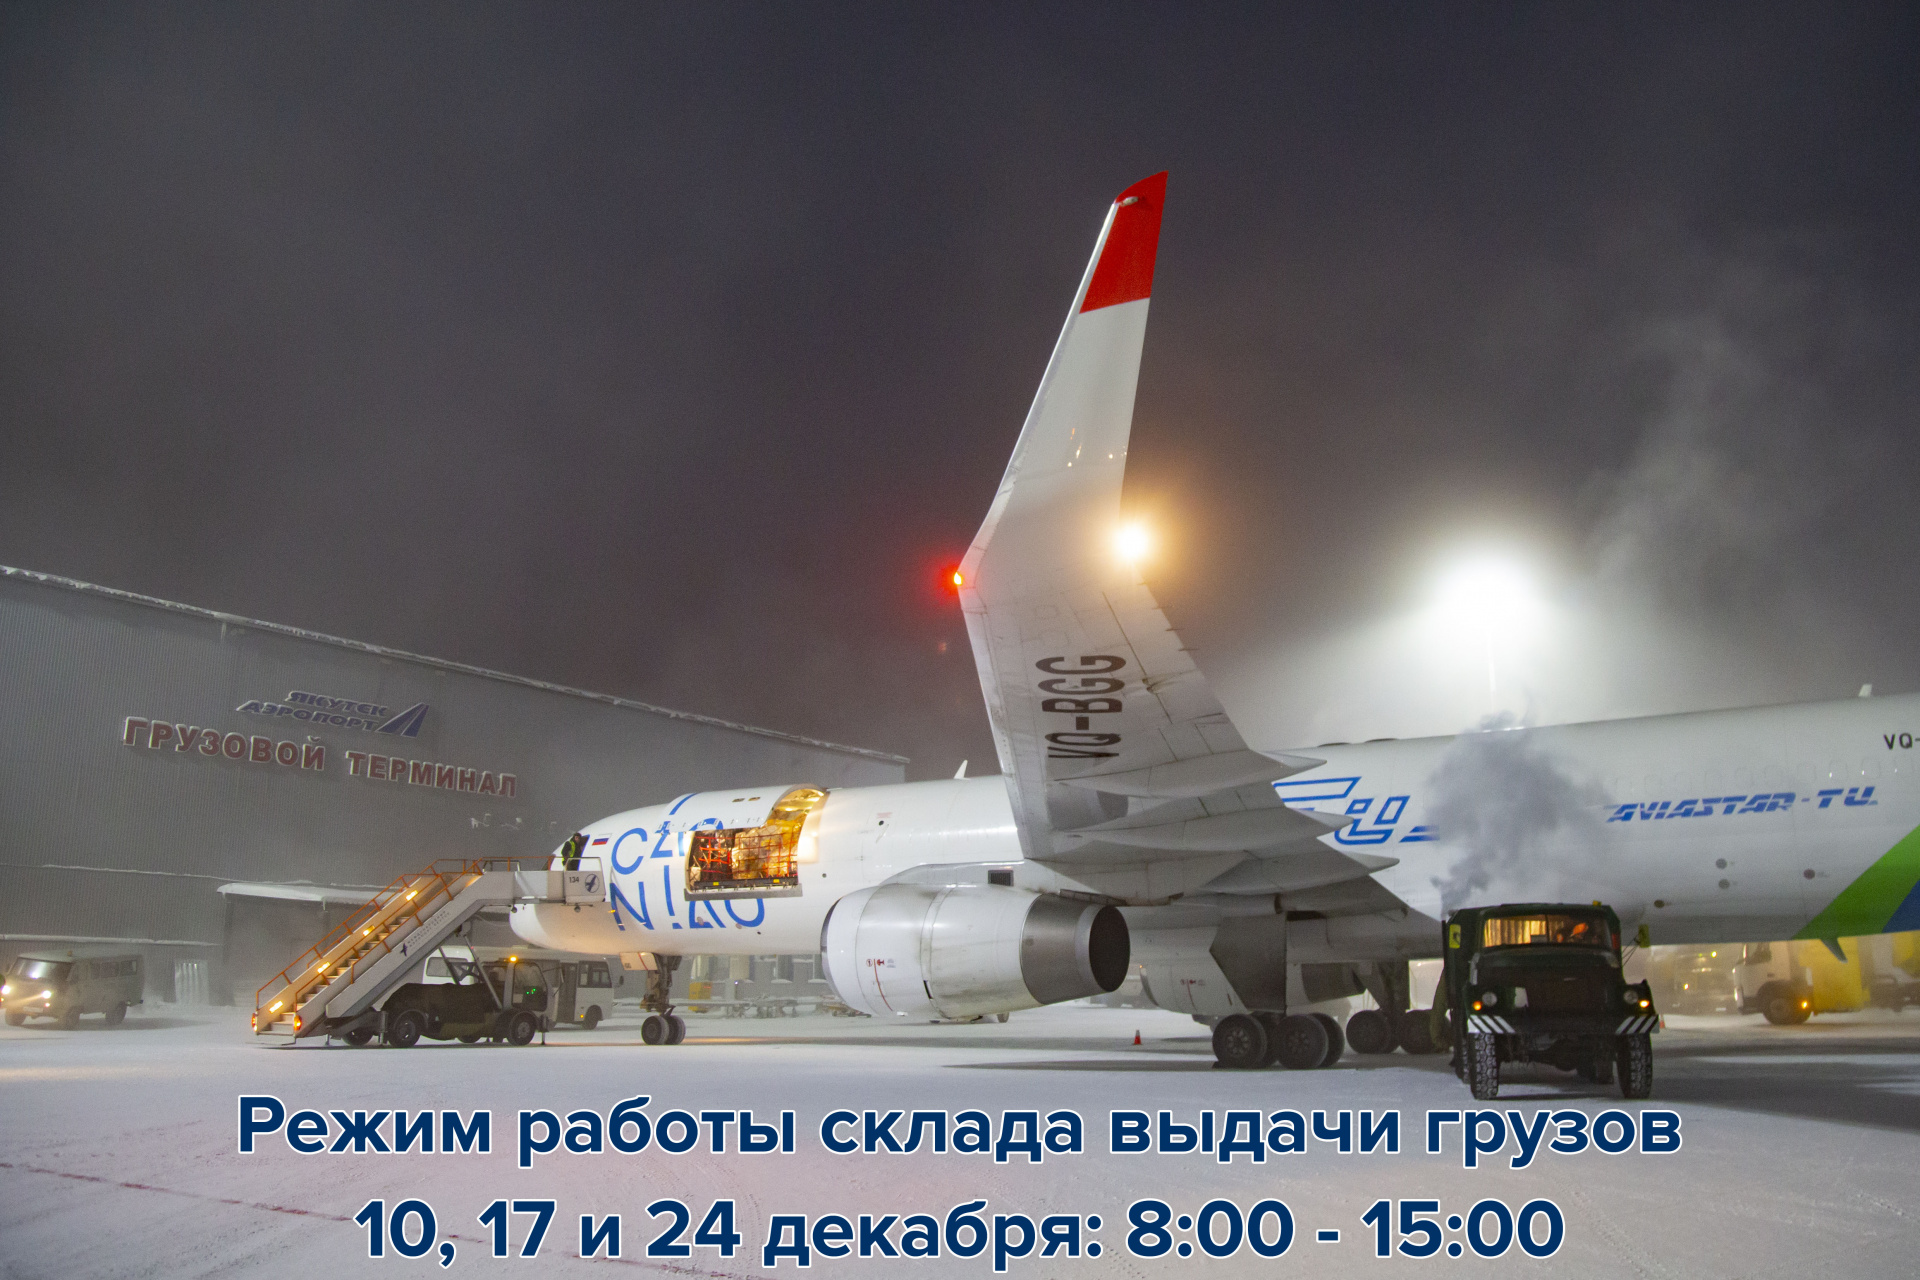 Информация для клиентов грузового терминала аэропорта “Якутск”